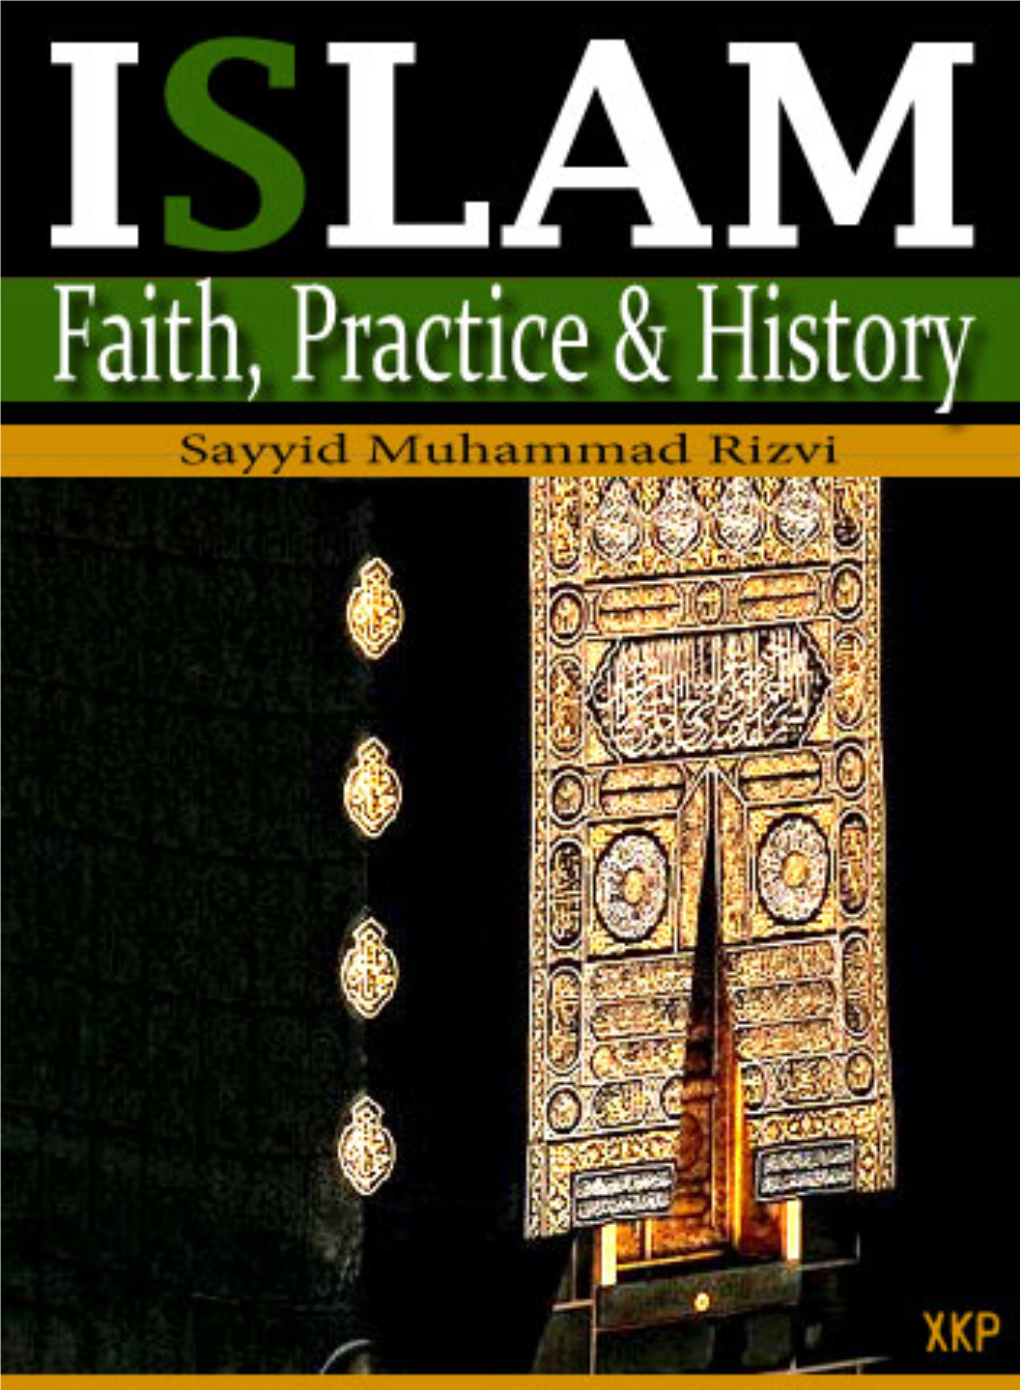 Islam: Faith, Practice & History